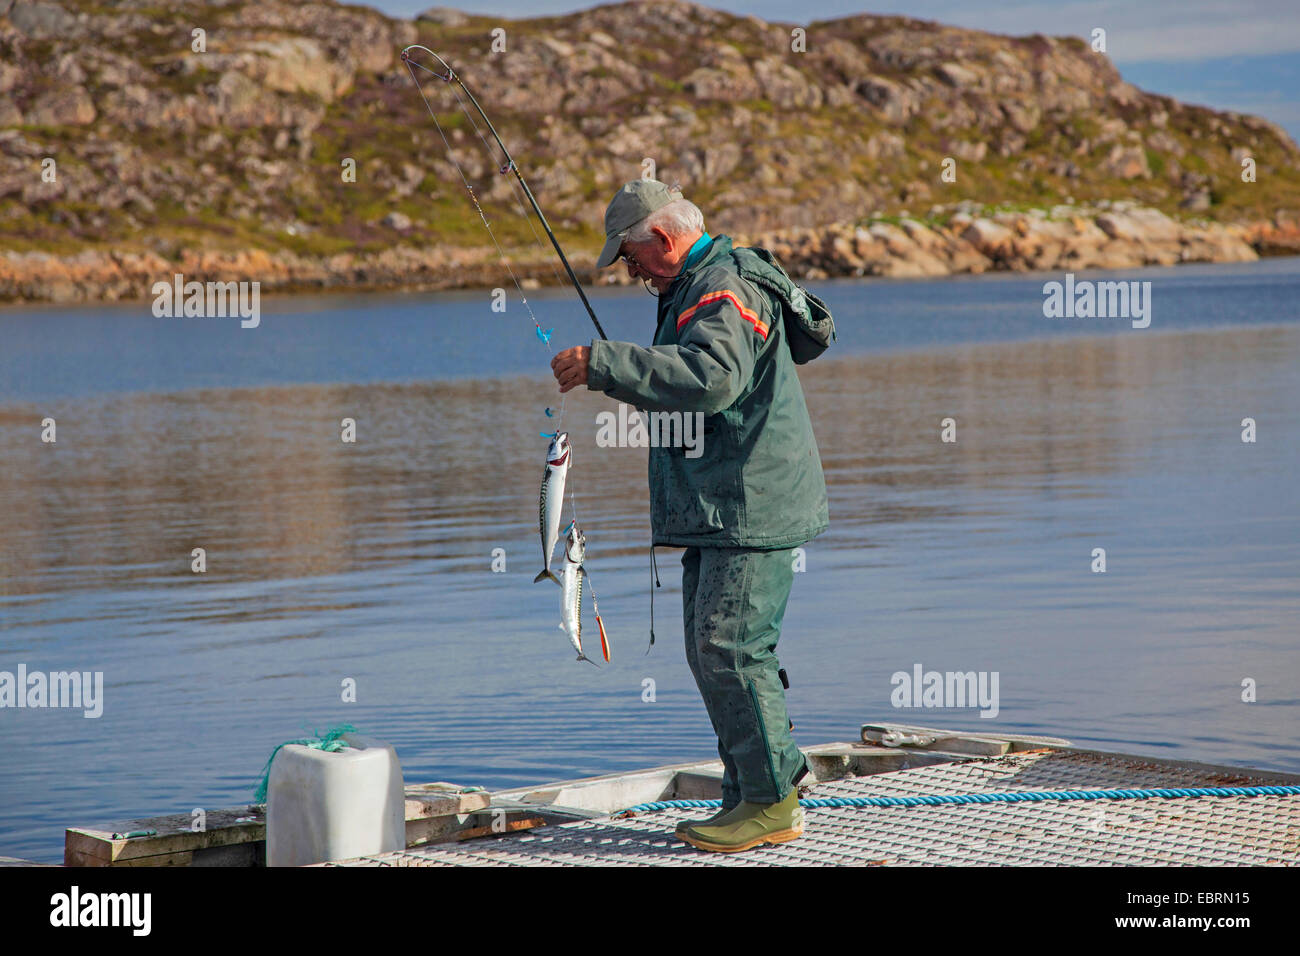 Le maquereau, le maquereau (Scomber scombrus), pêcheur La pêche sur la promenade, la Norvège, l'Hitra Banque D'Images